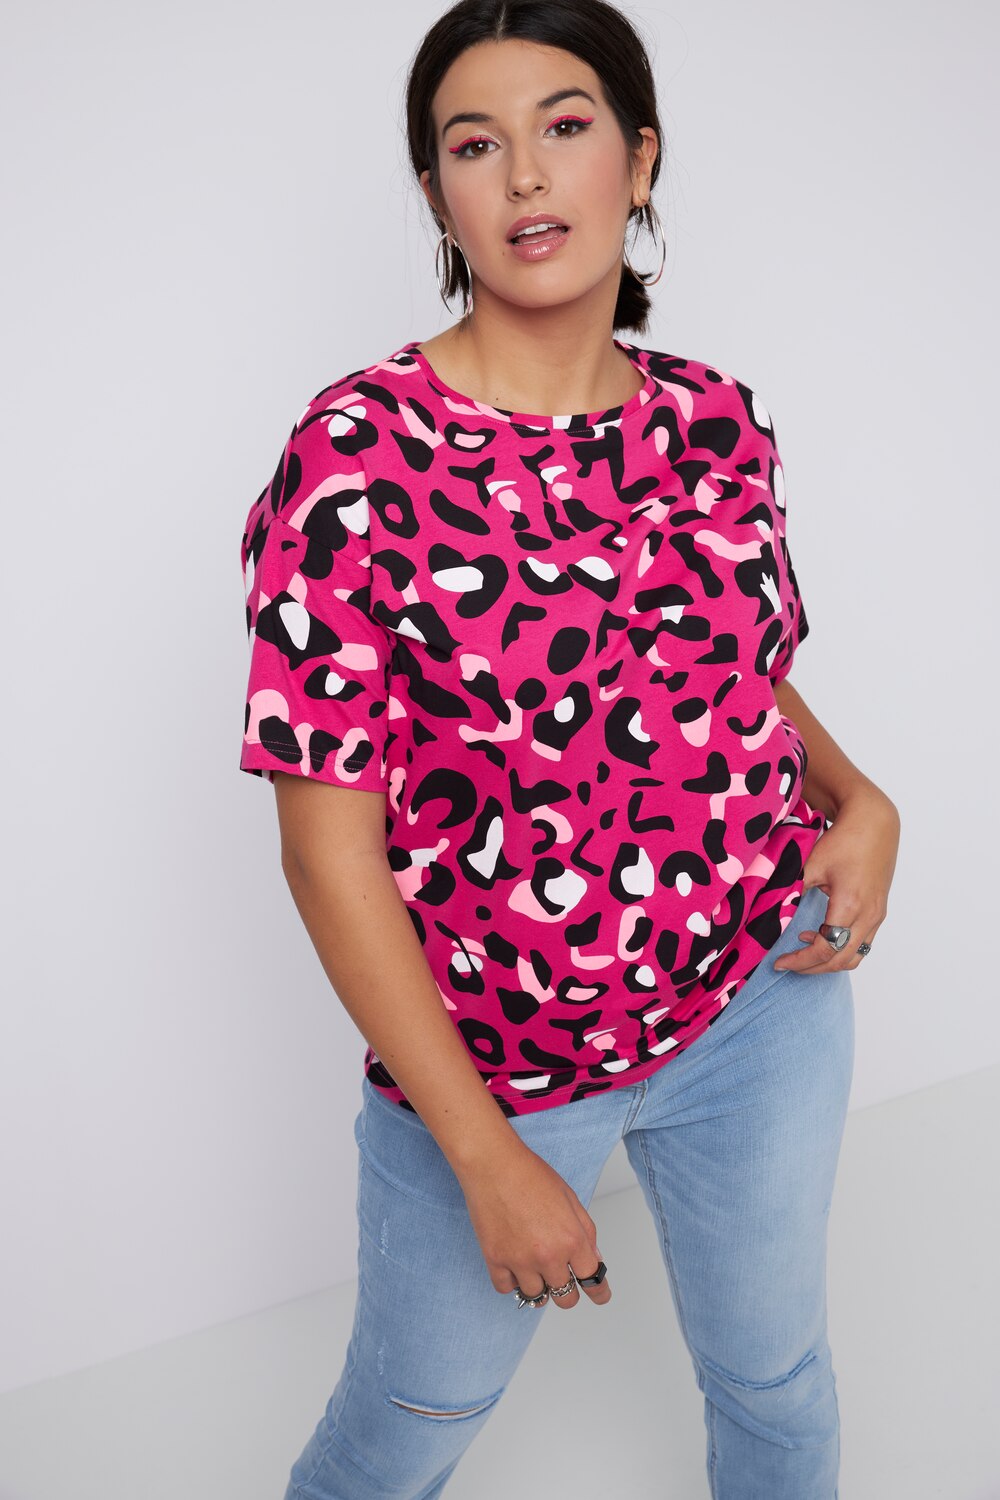 Grote Maten T-shirt, Dames, roze, Maat: 58/60, Katoen, Studio Untold